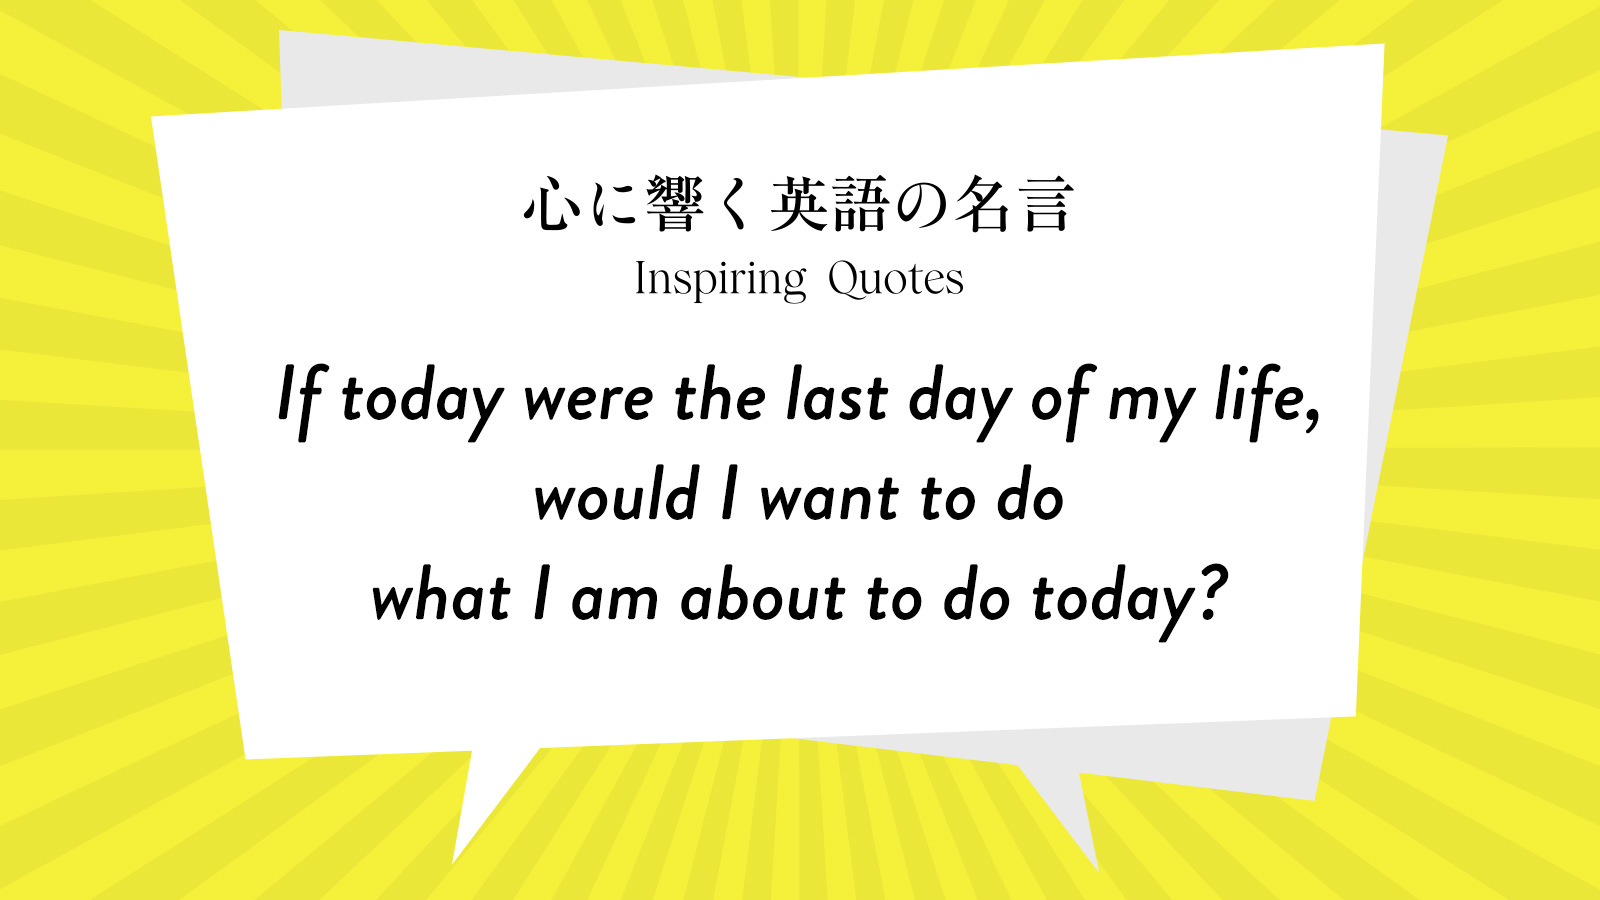 今週の名言 “If today were the last day of my life, would I want to do what I am about to do today?” | Inspiring Quotes: 心に響く英語の名言